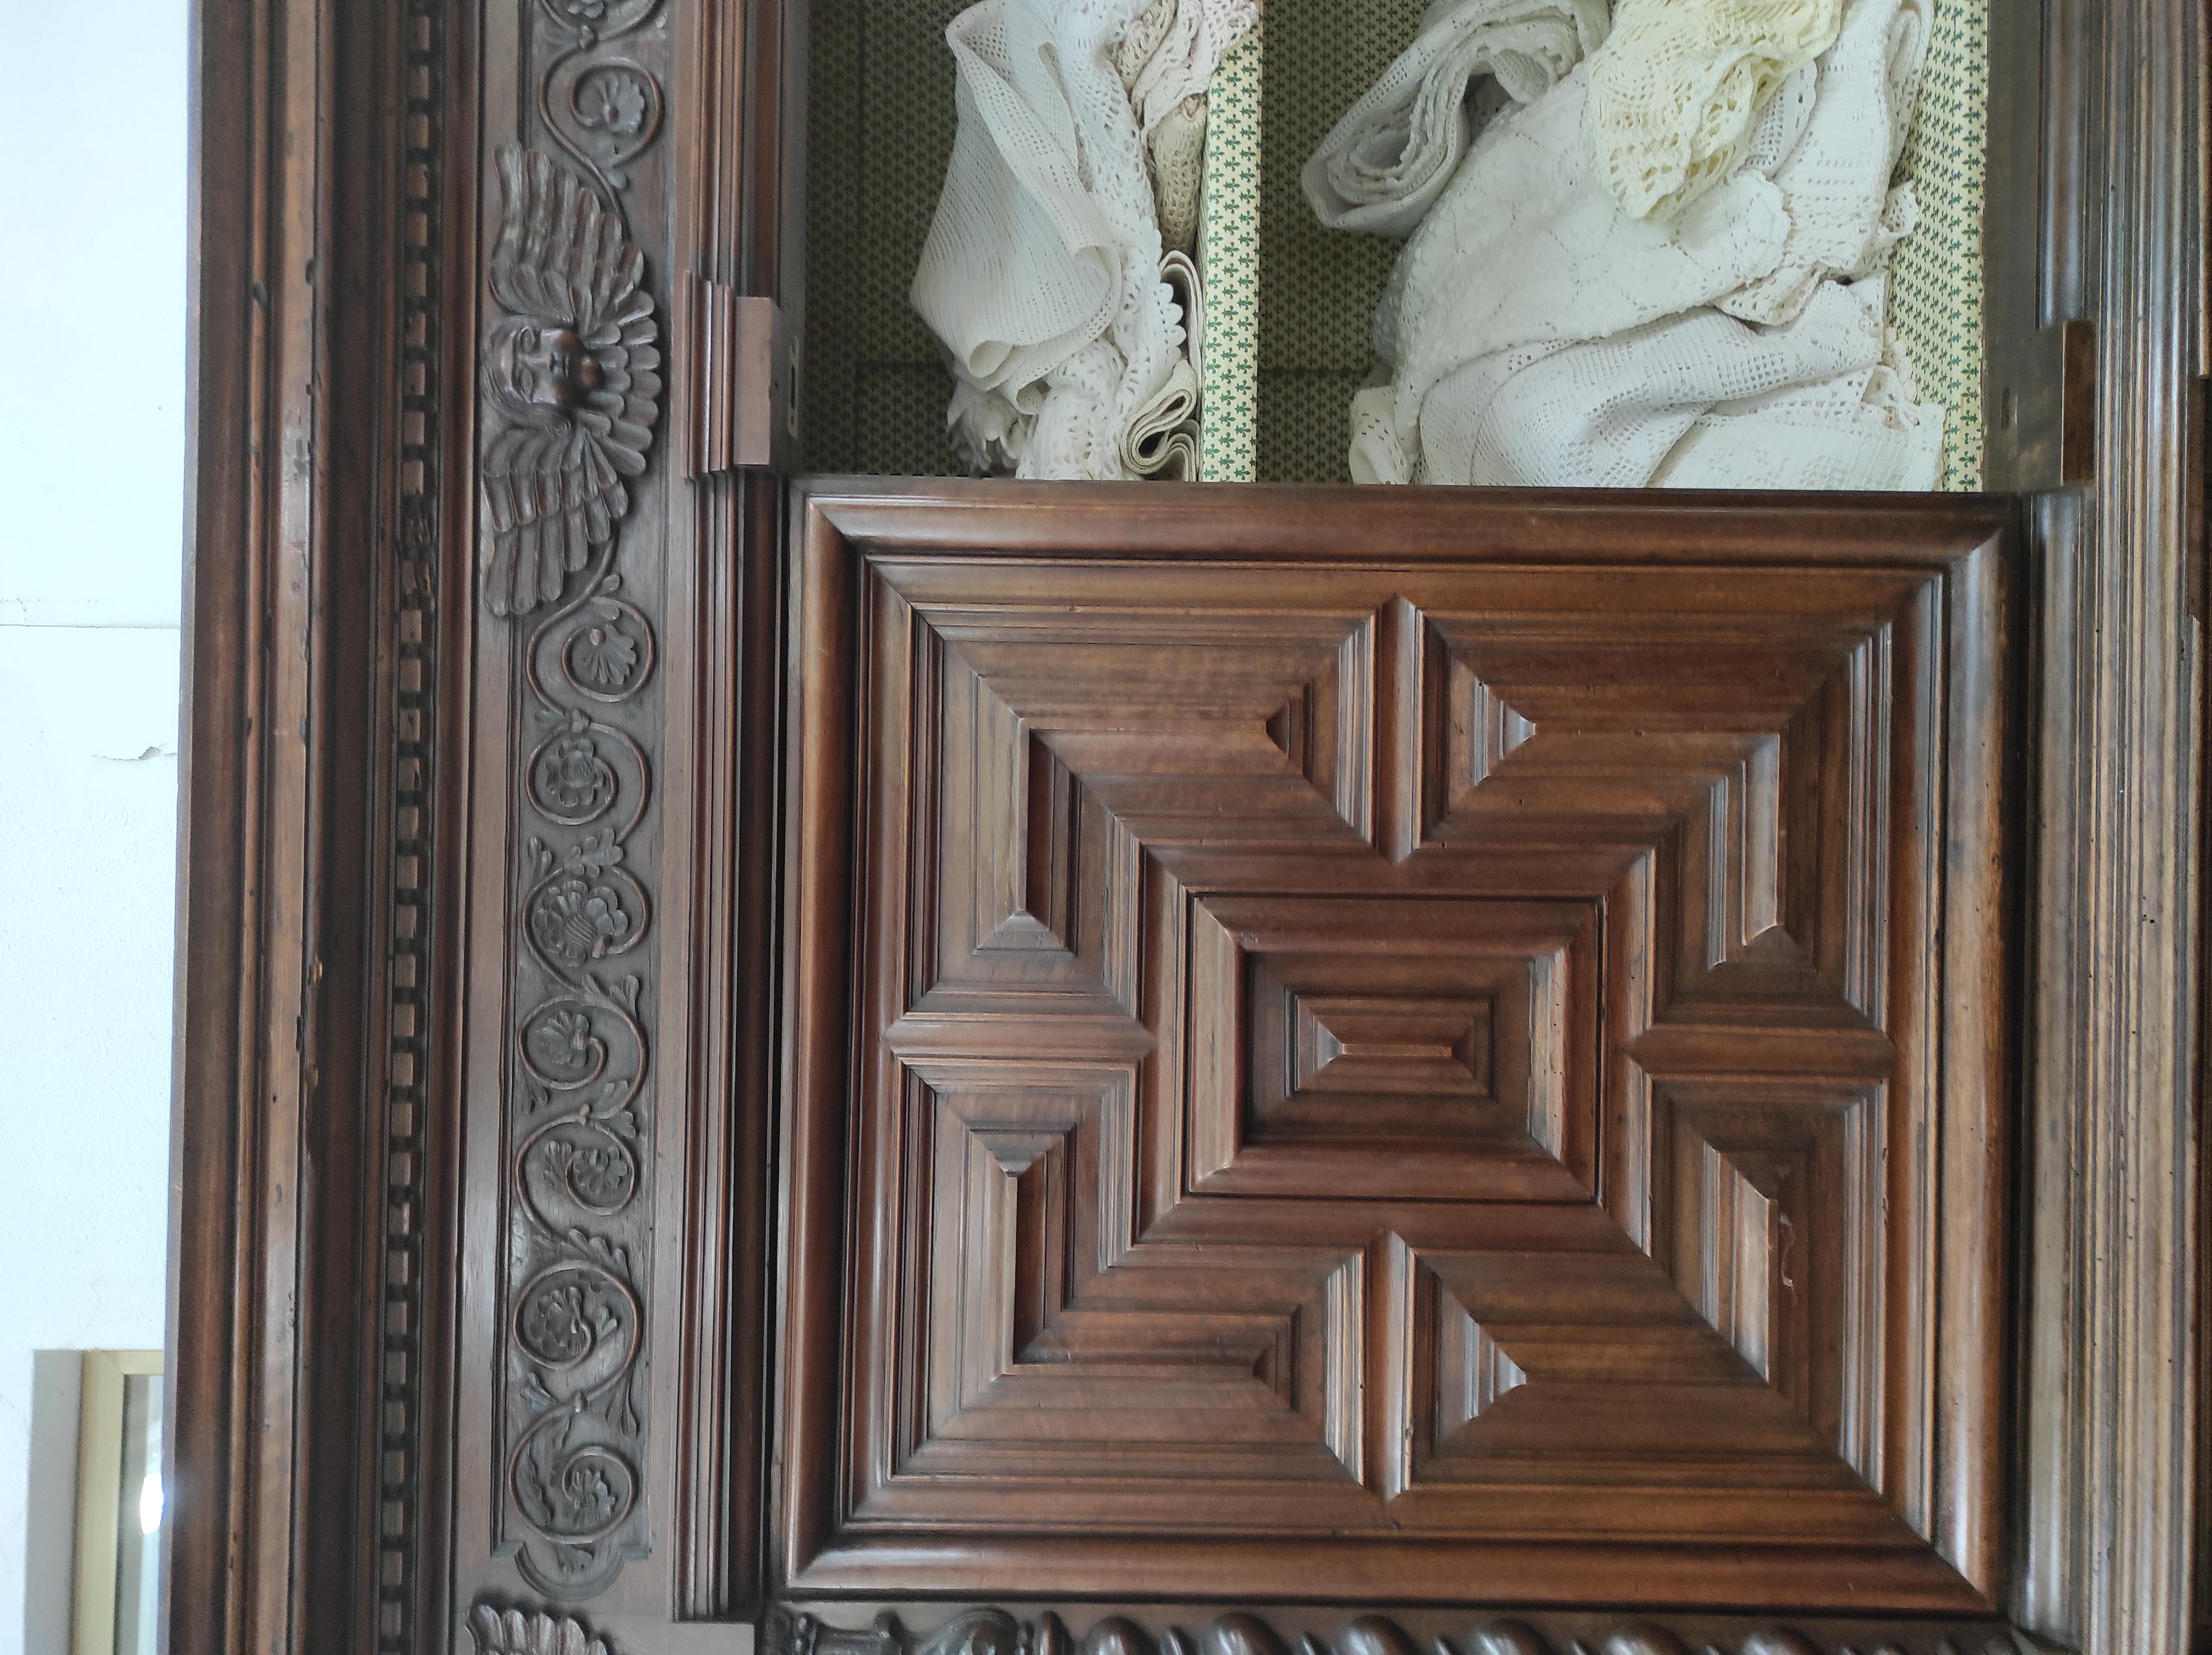 Corps en noyer double.provenance Italie.époque fin des années 1700
Ce fabuleux meuble est entièrement taillé et sculpté par des mains d'or
Il est en bois de noyer massif
Il a une capacité fabuleuse et est équipé de quatre portes et de trois